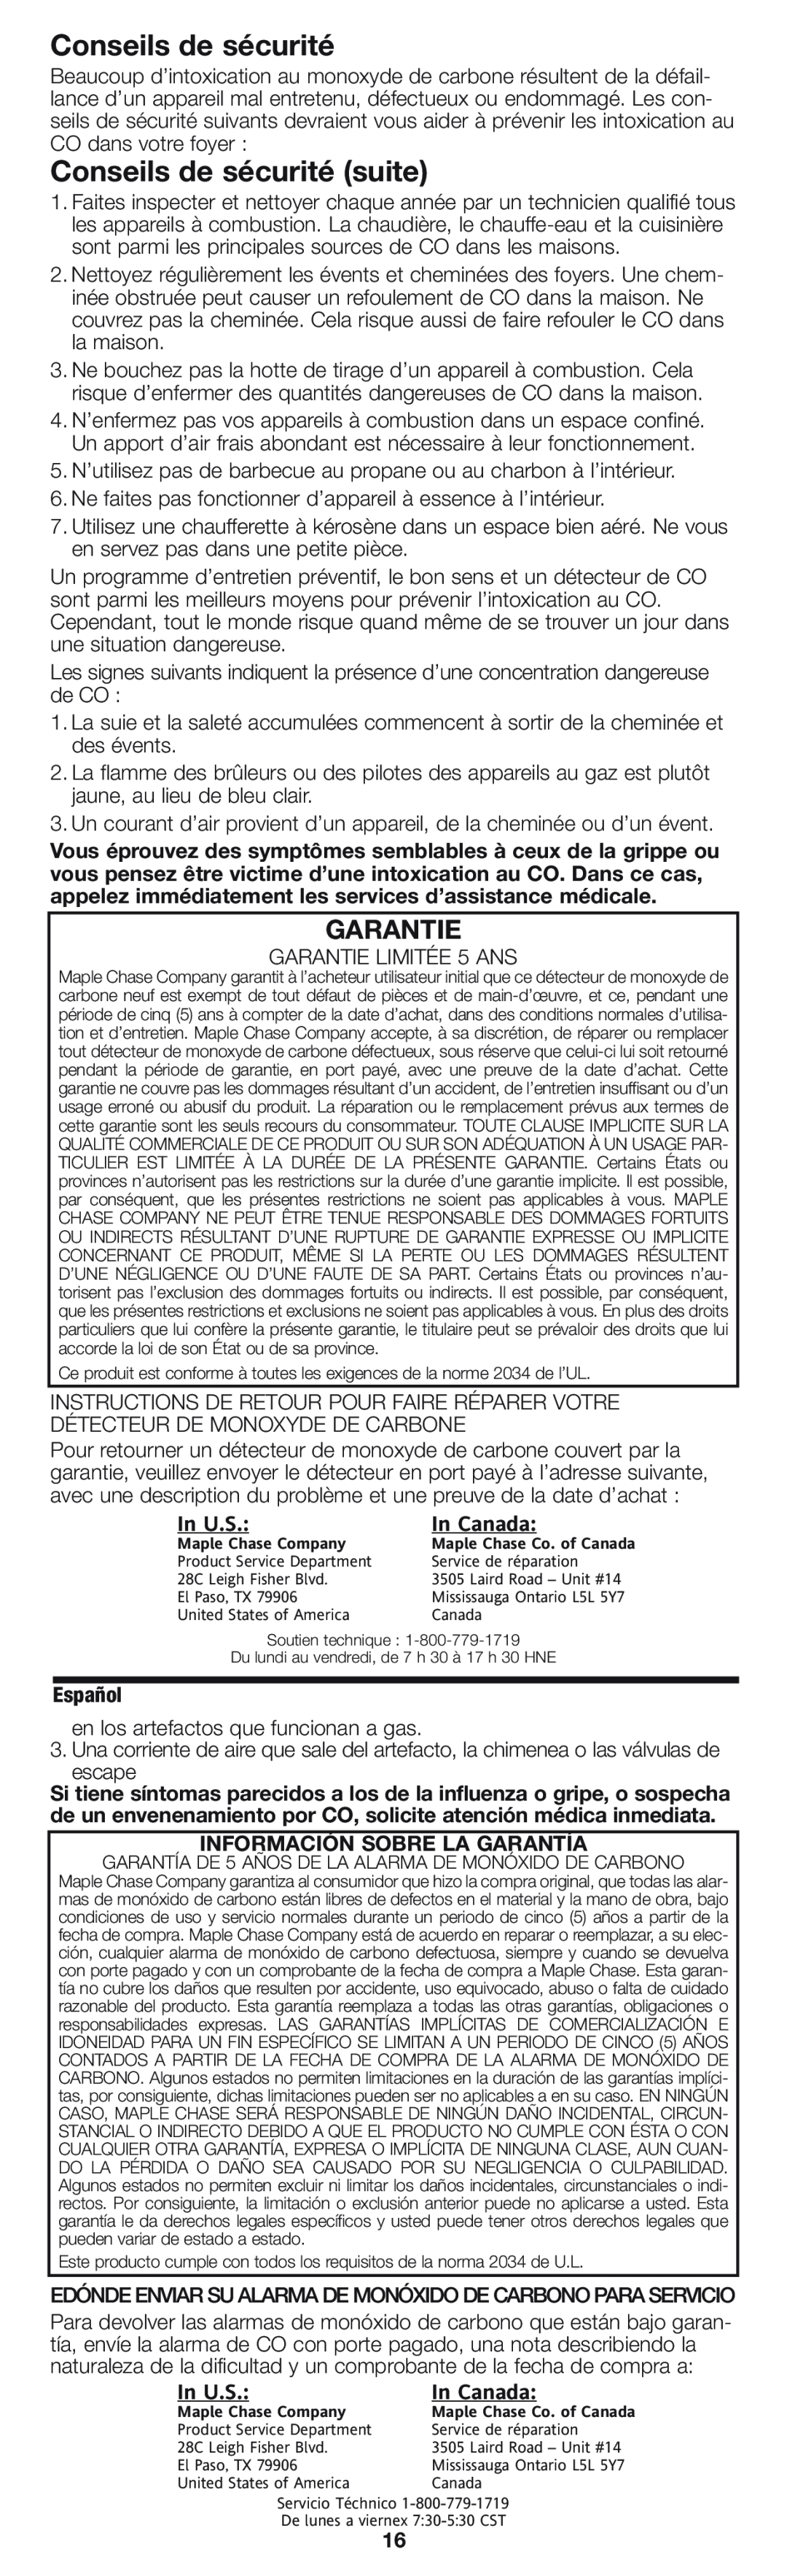 Firex pmn owner manual Conseils de sécurité suite, Garantie, In U.S, In Canada, Información Sobre La Garantía 